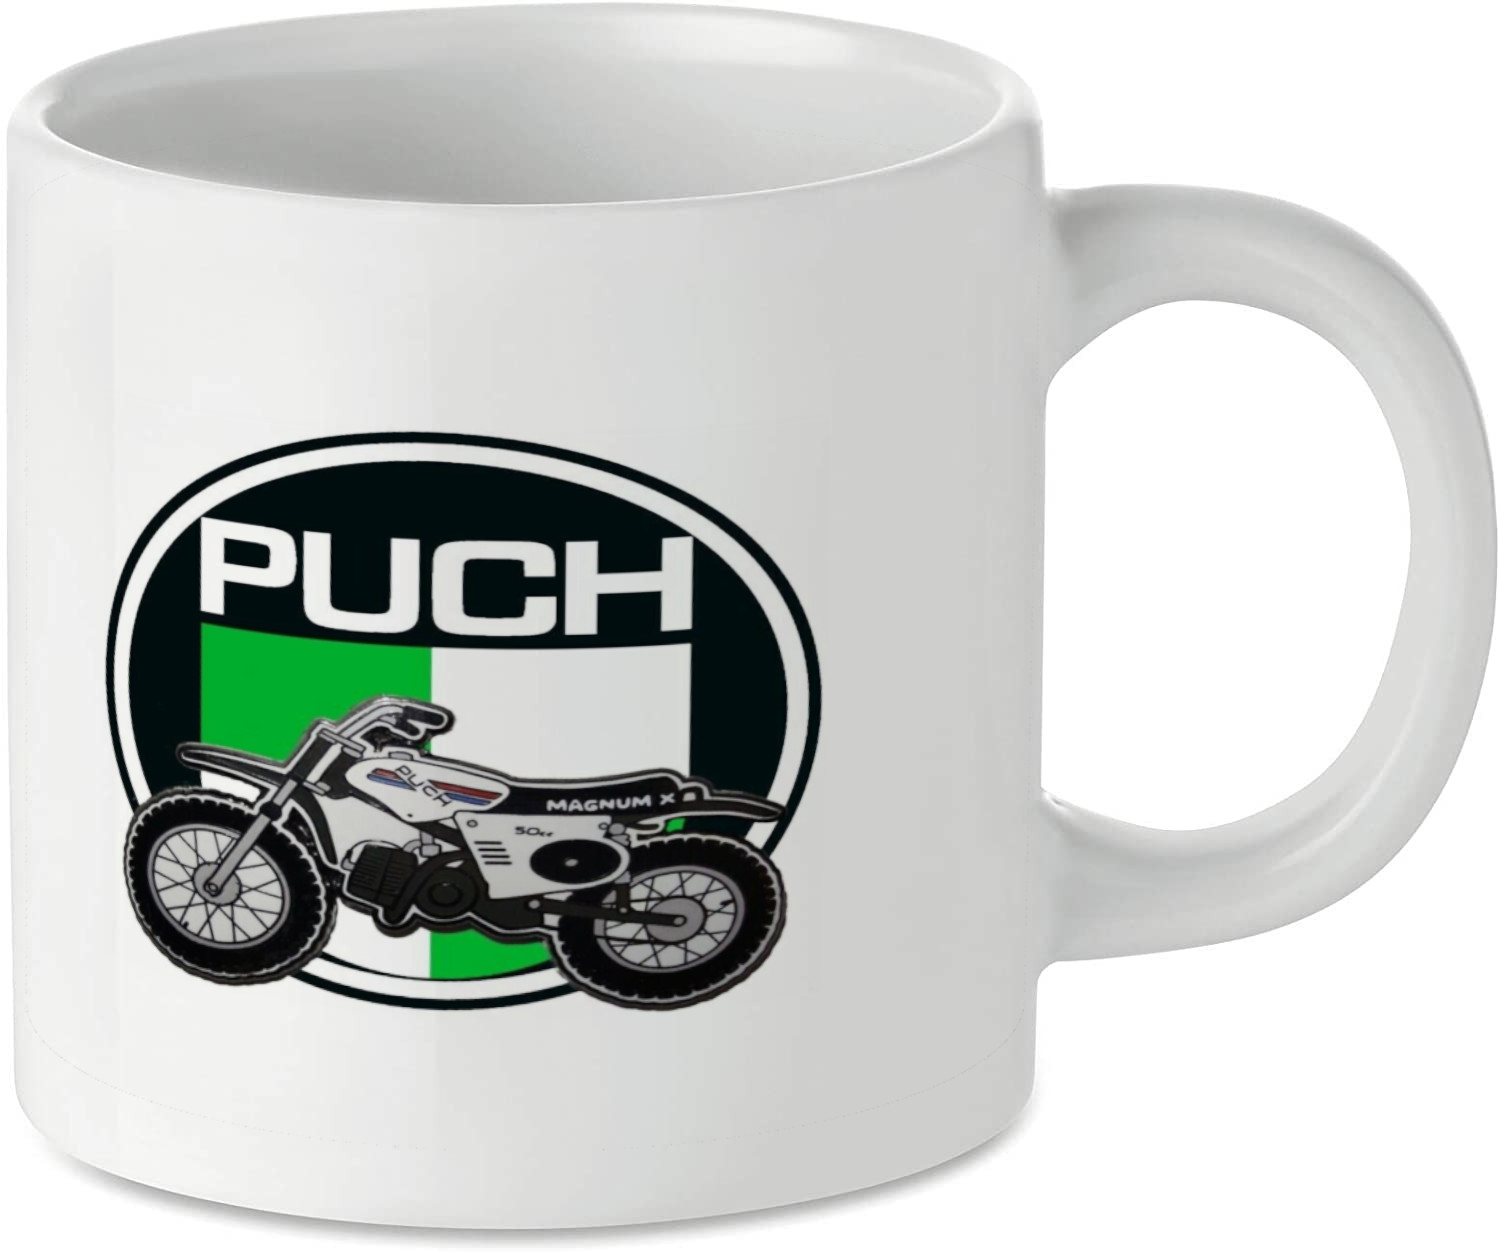 Puch Motorcycle Motorbike Tea Coffee Mug Ideal Biker Gift Printed UK